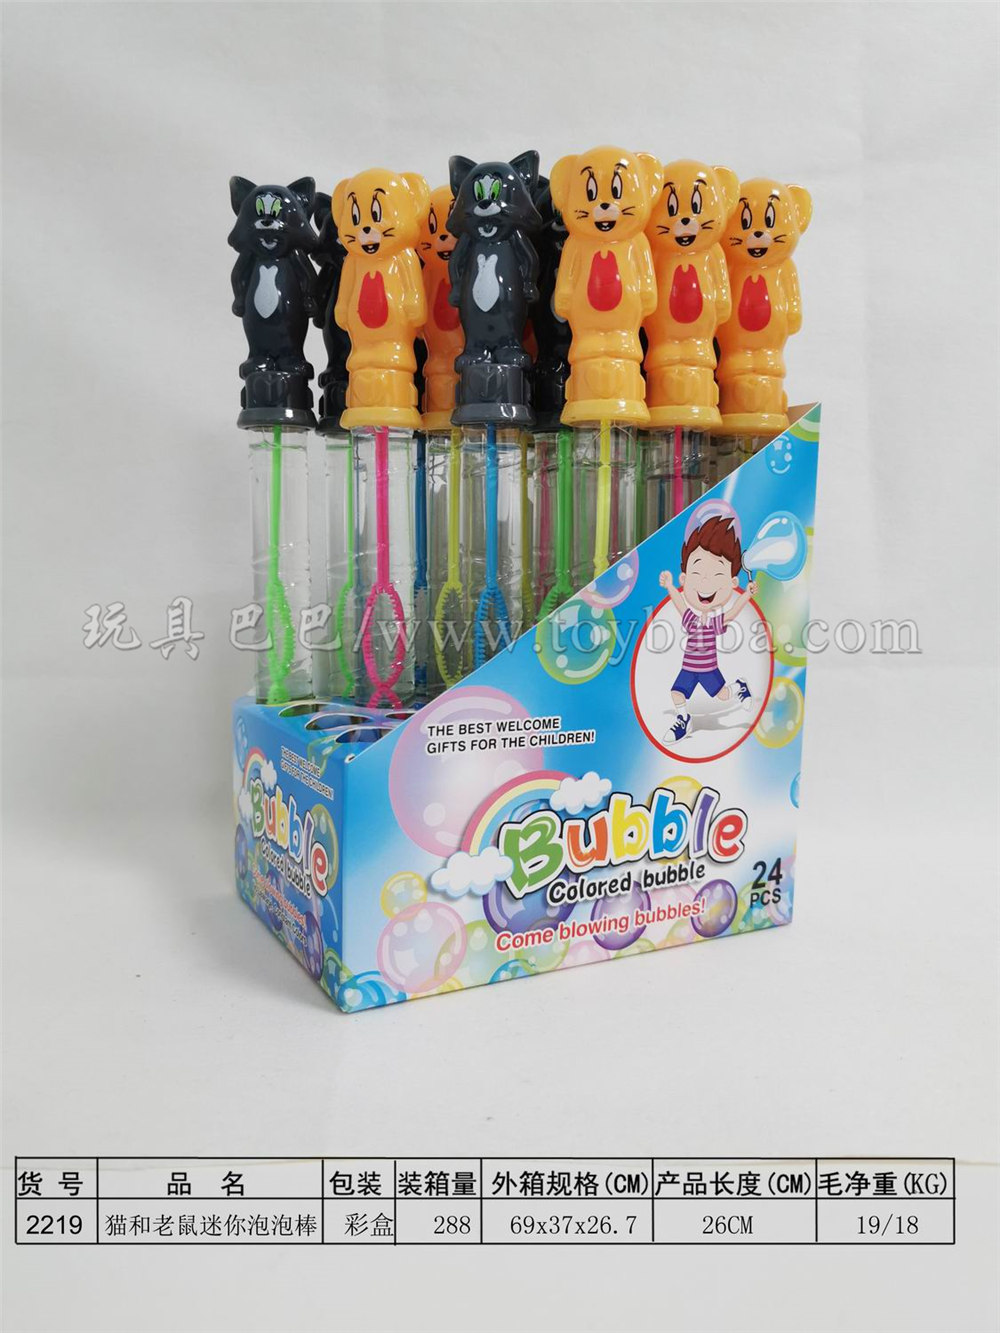 26cm cat and mouse bubble stick 24pcs / box (4 colors)